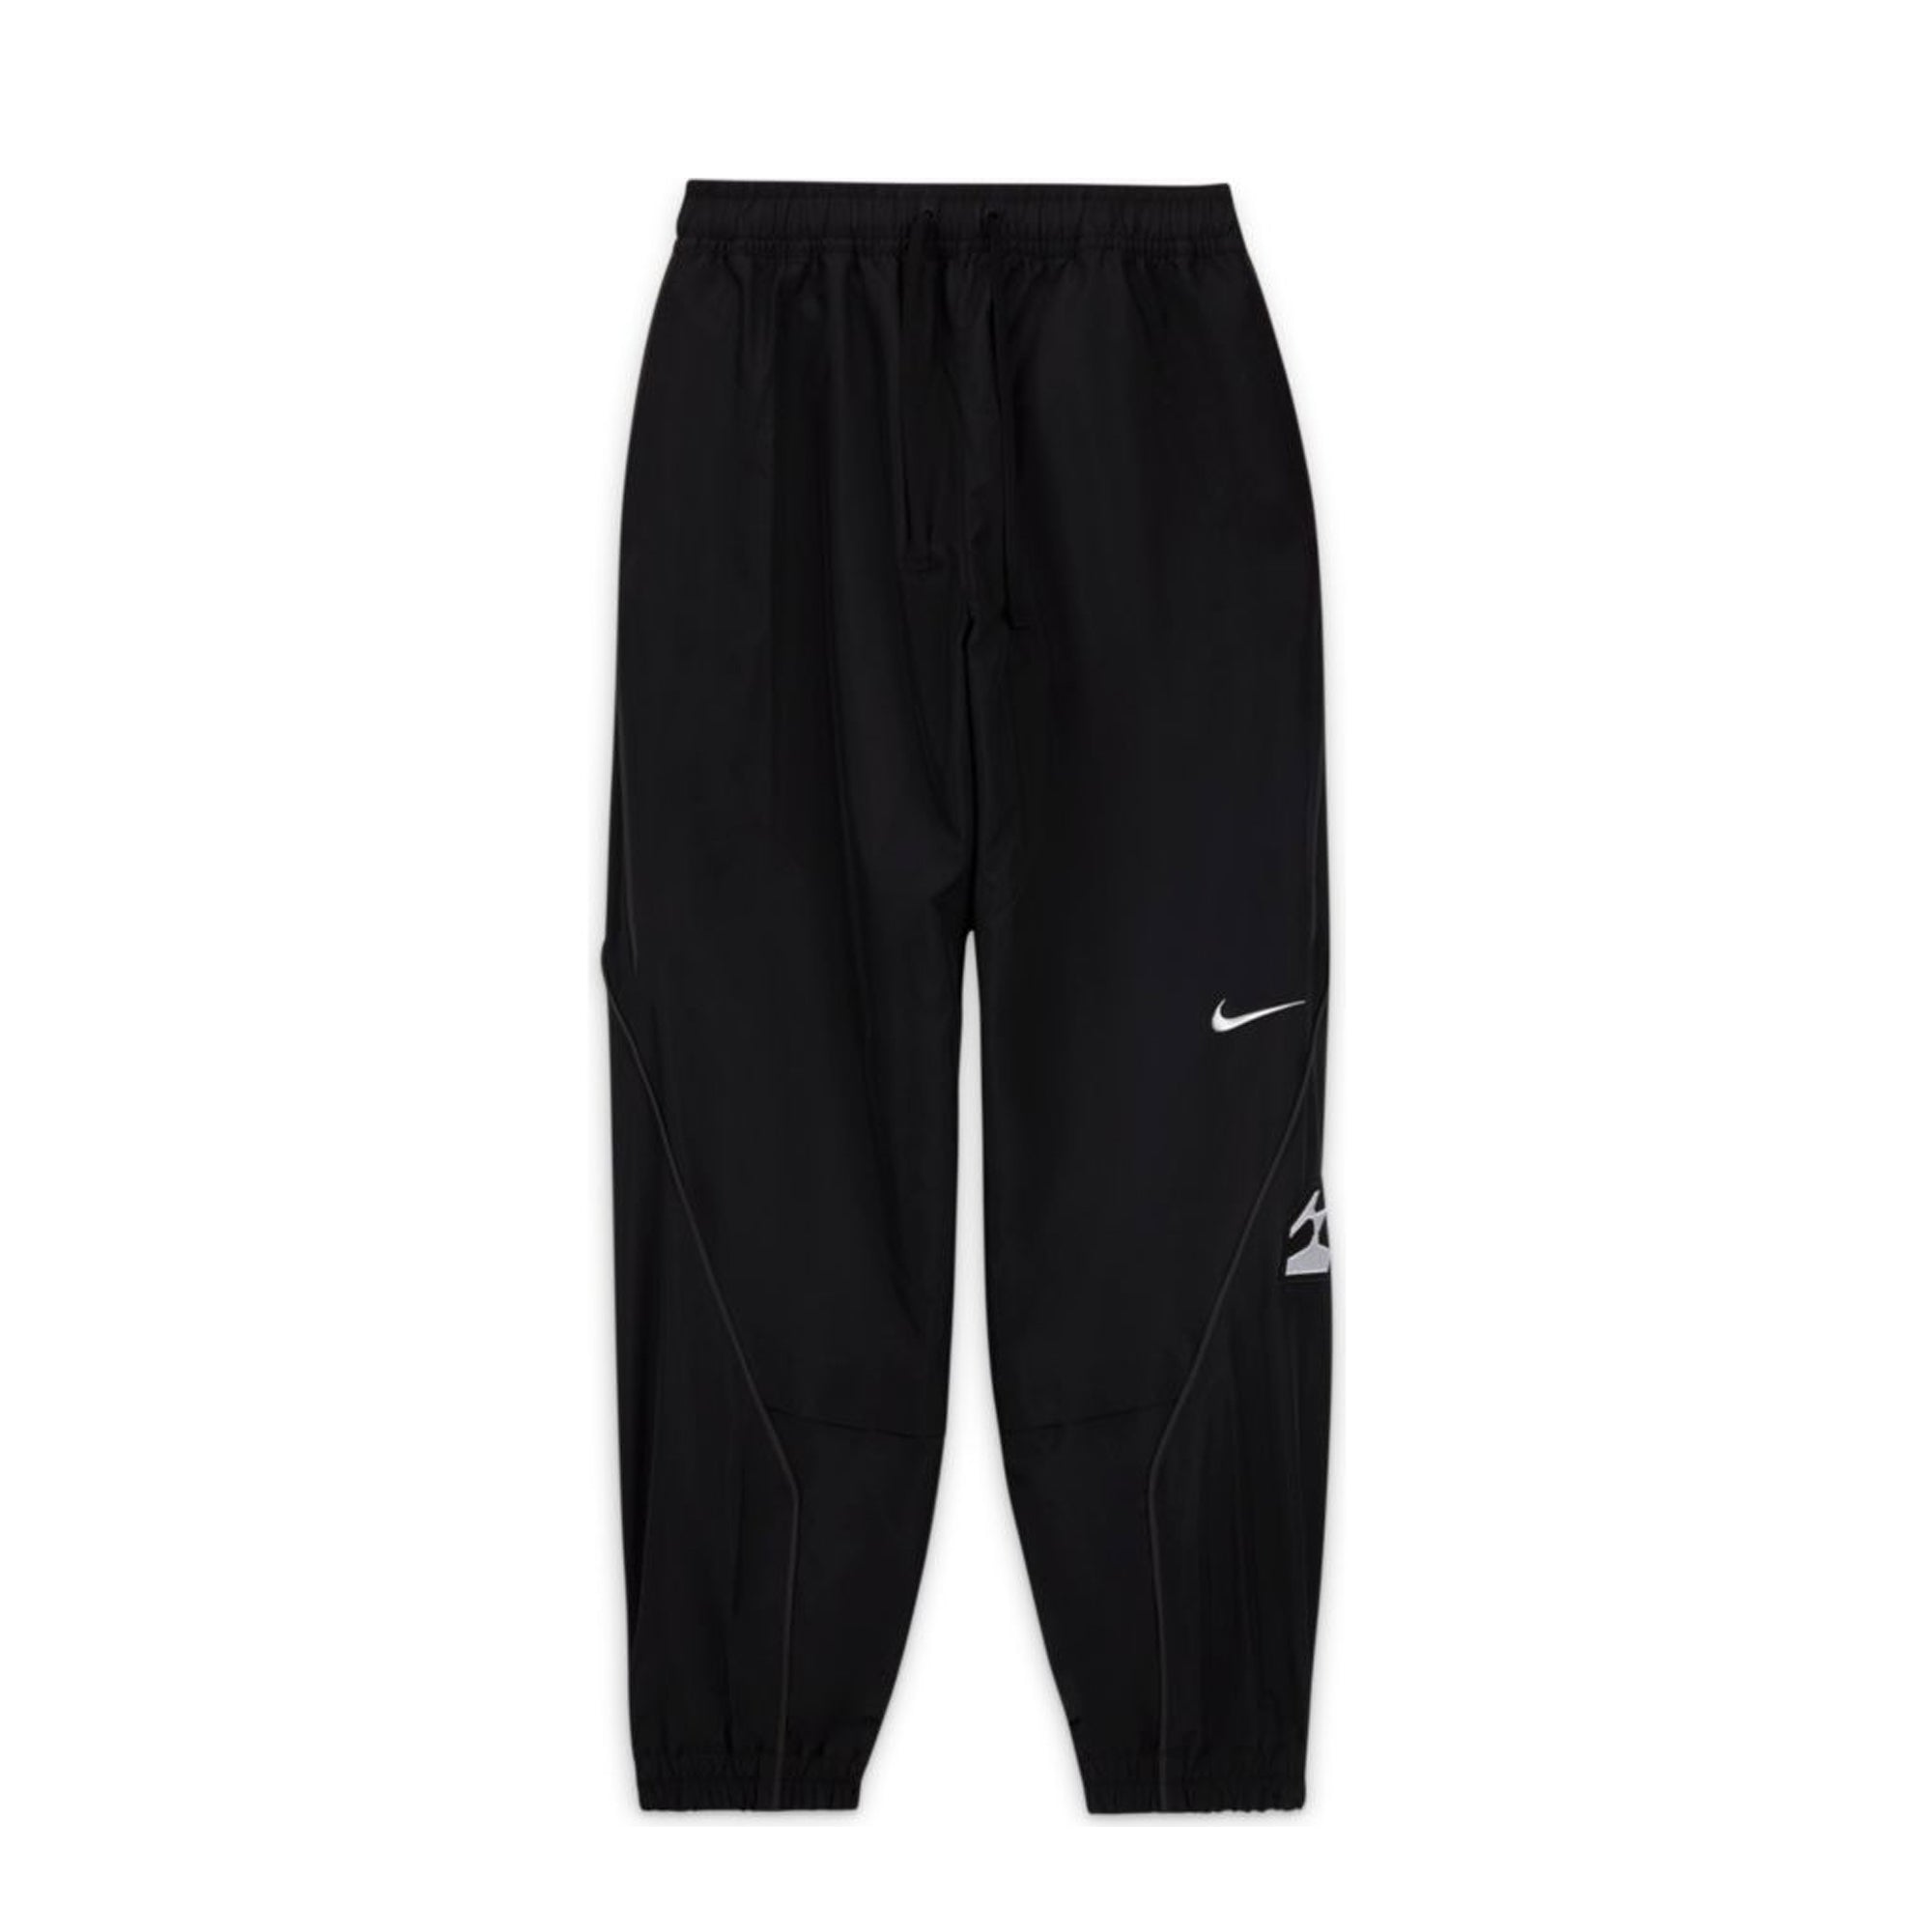 Nike NRG Woven Track Pant Black & White